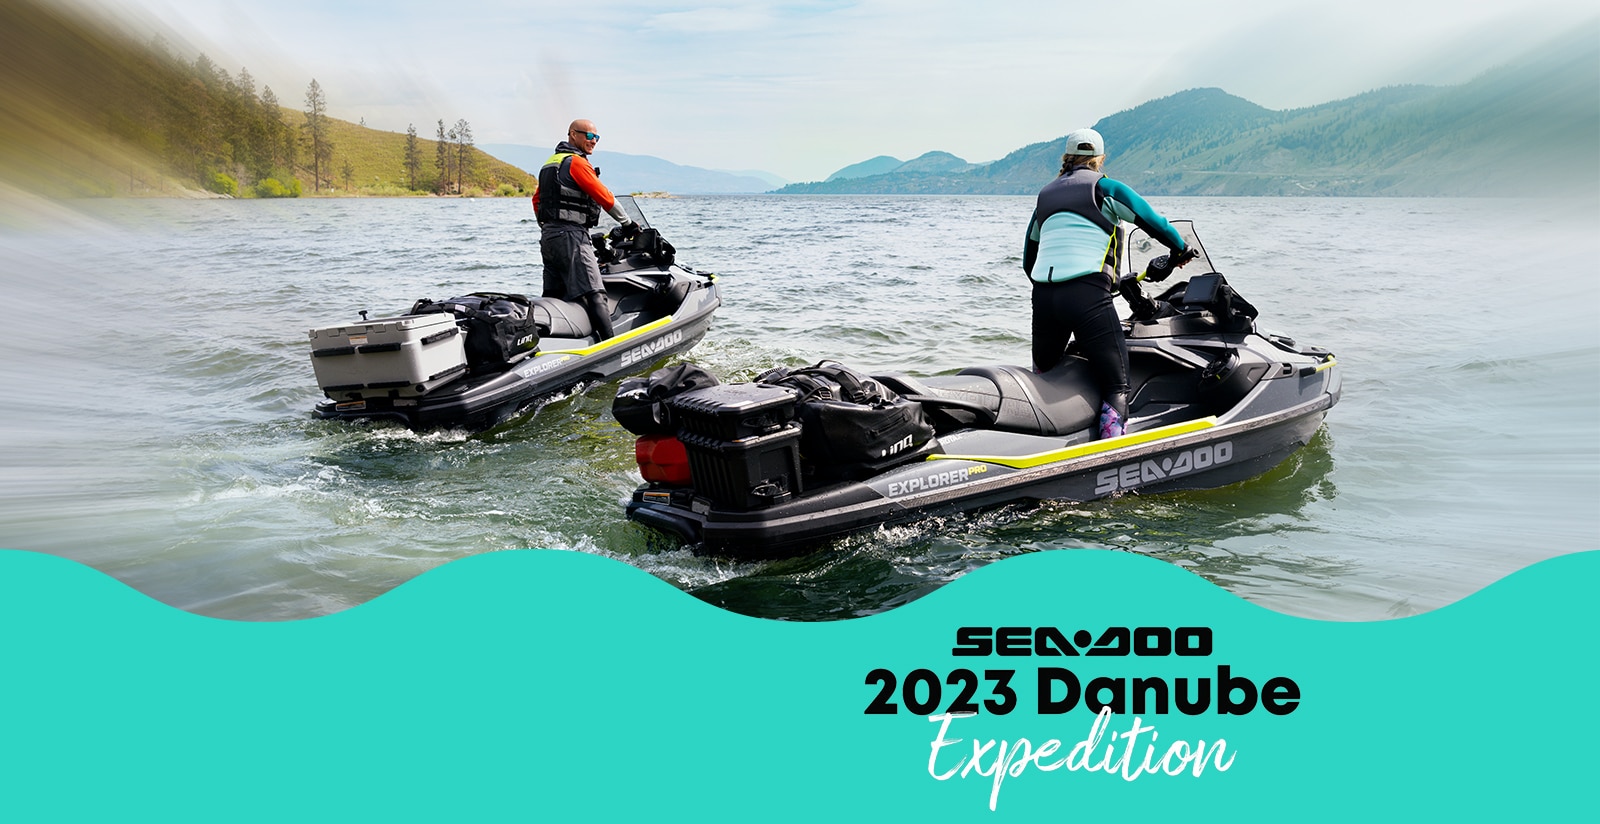 Sea-Doo Danube expedition 2023 1/2